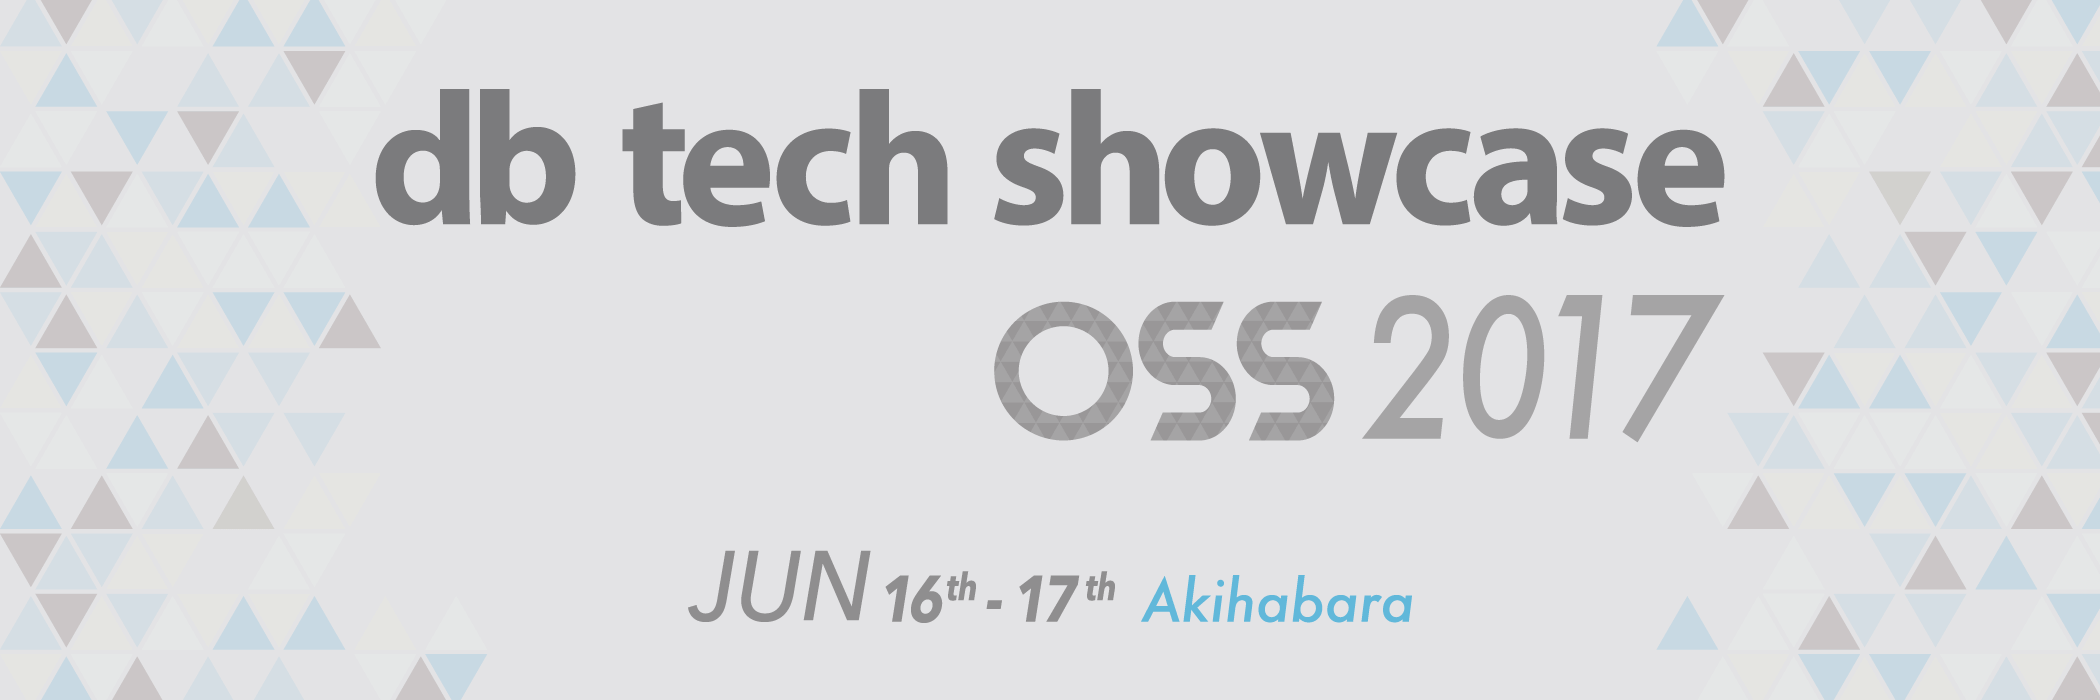 db tech showcase OSS 2017